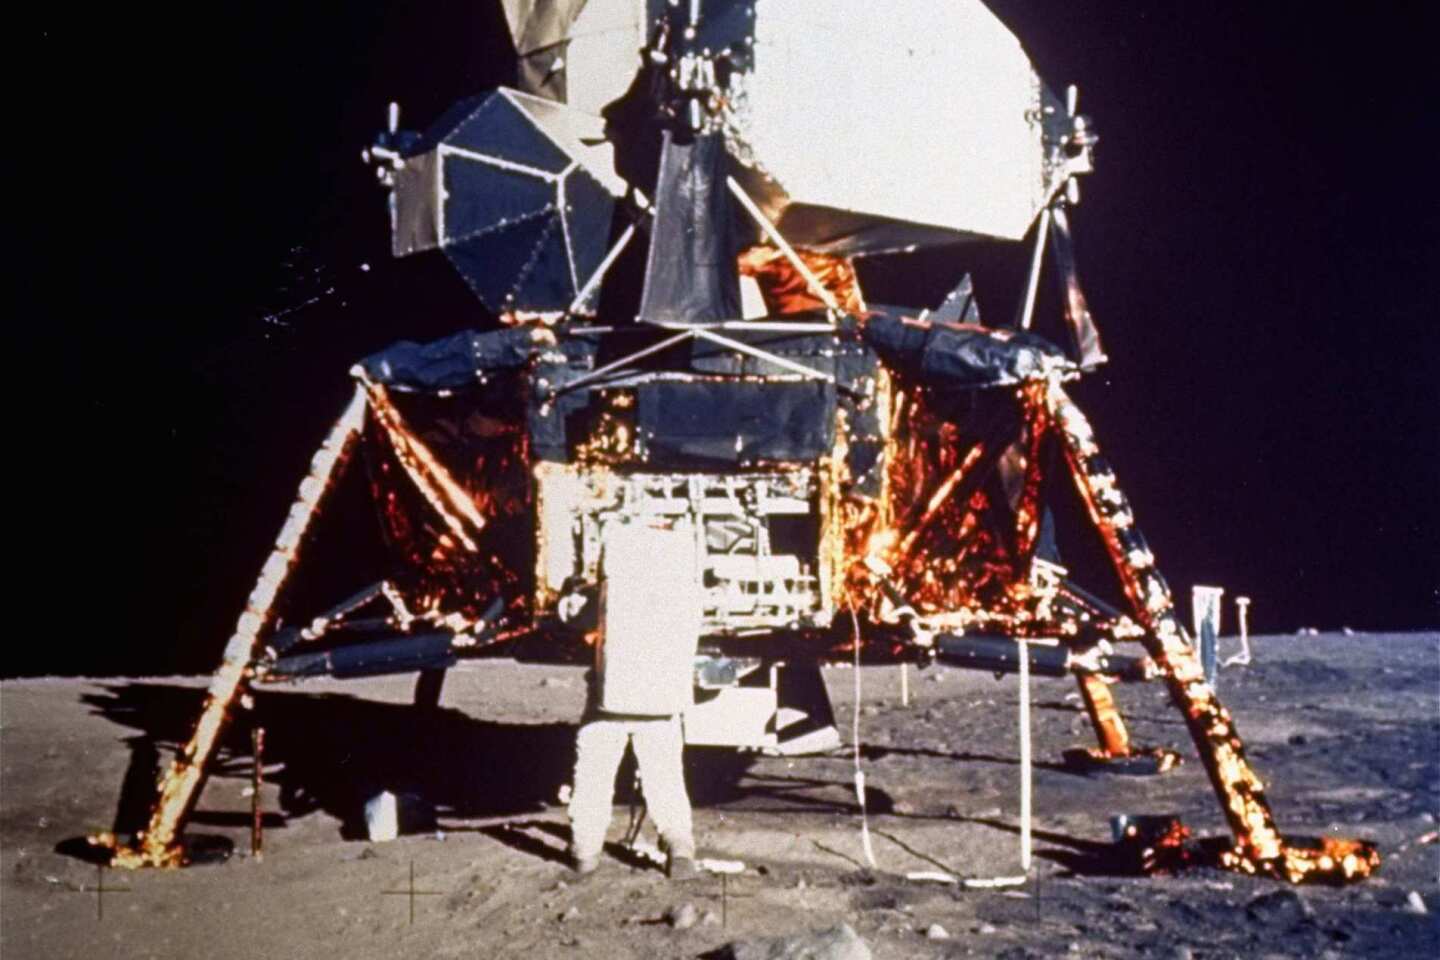 Apollo II on the moon